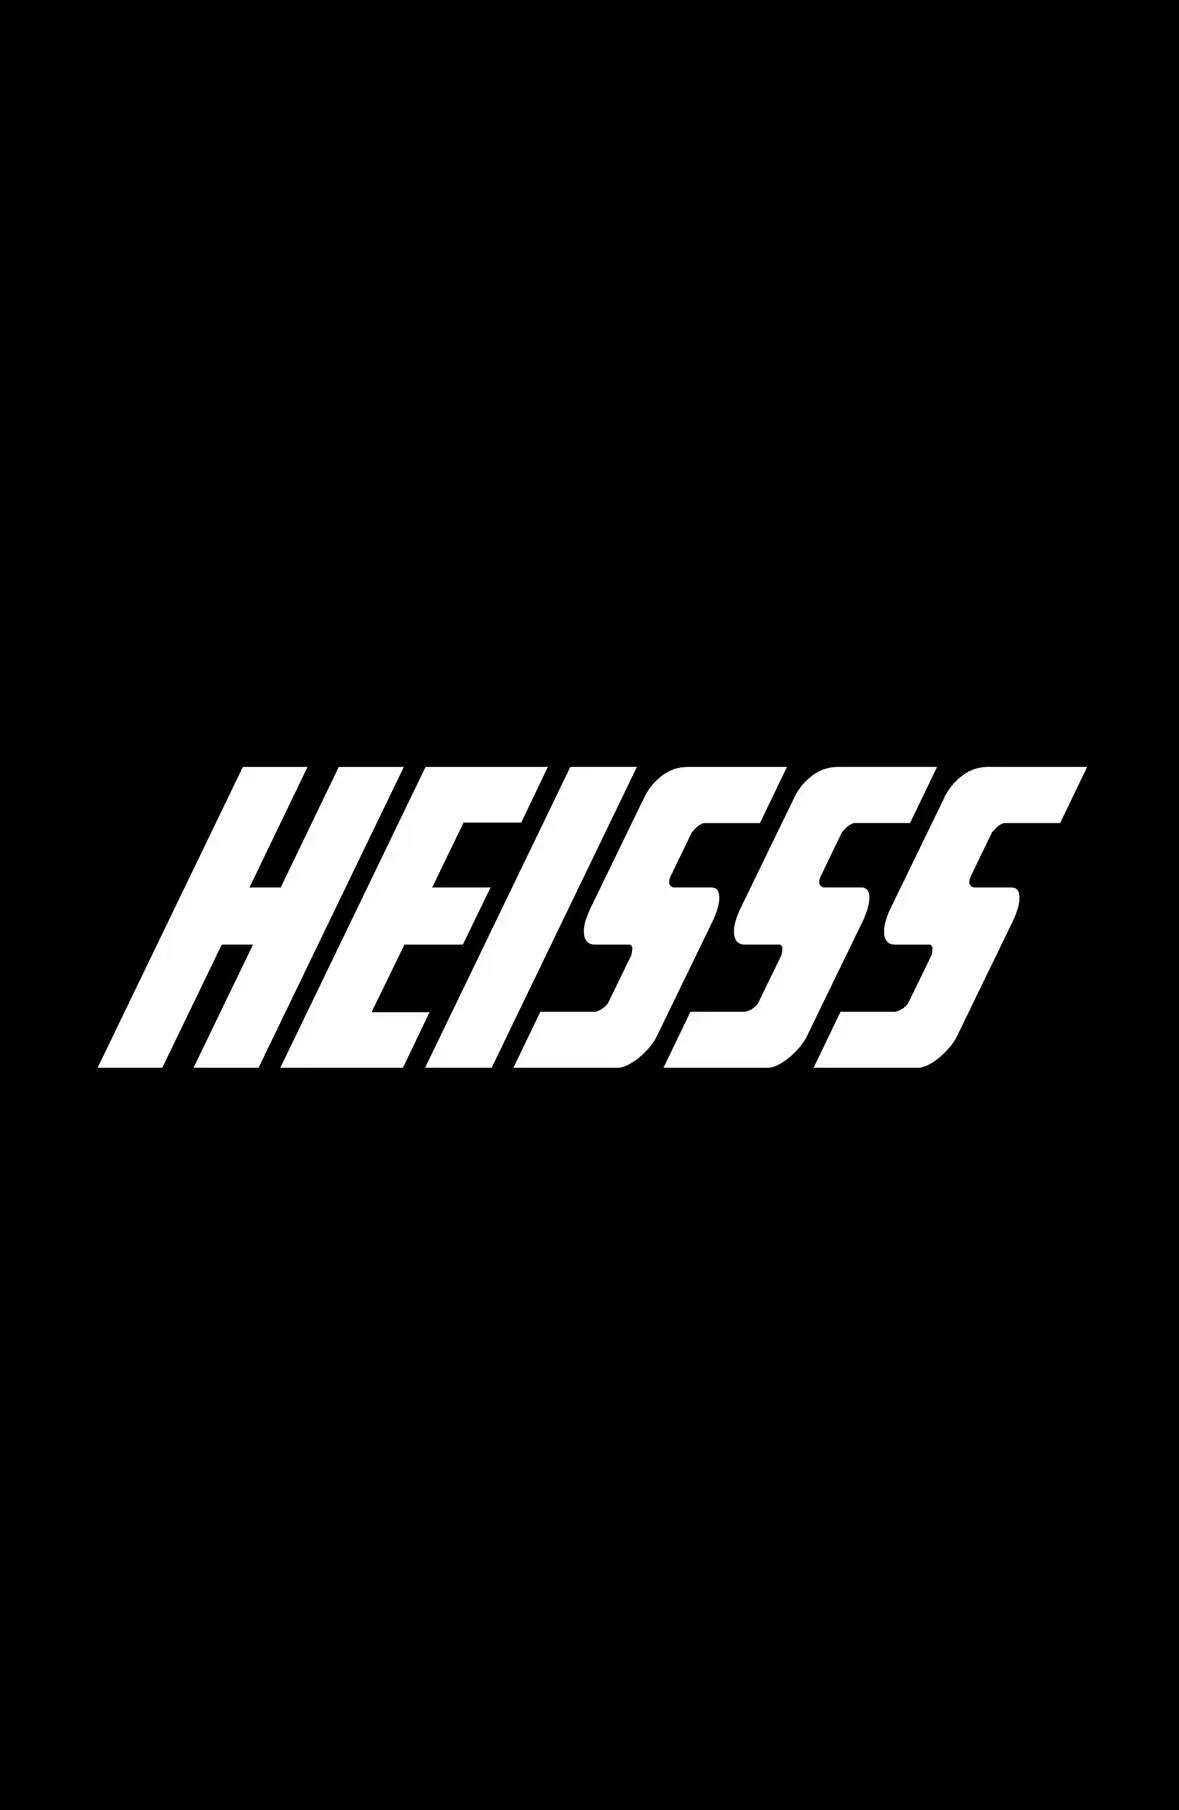 HEISSS - Página frontal